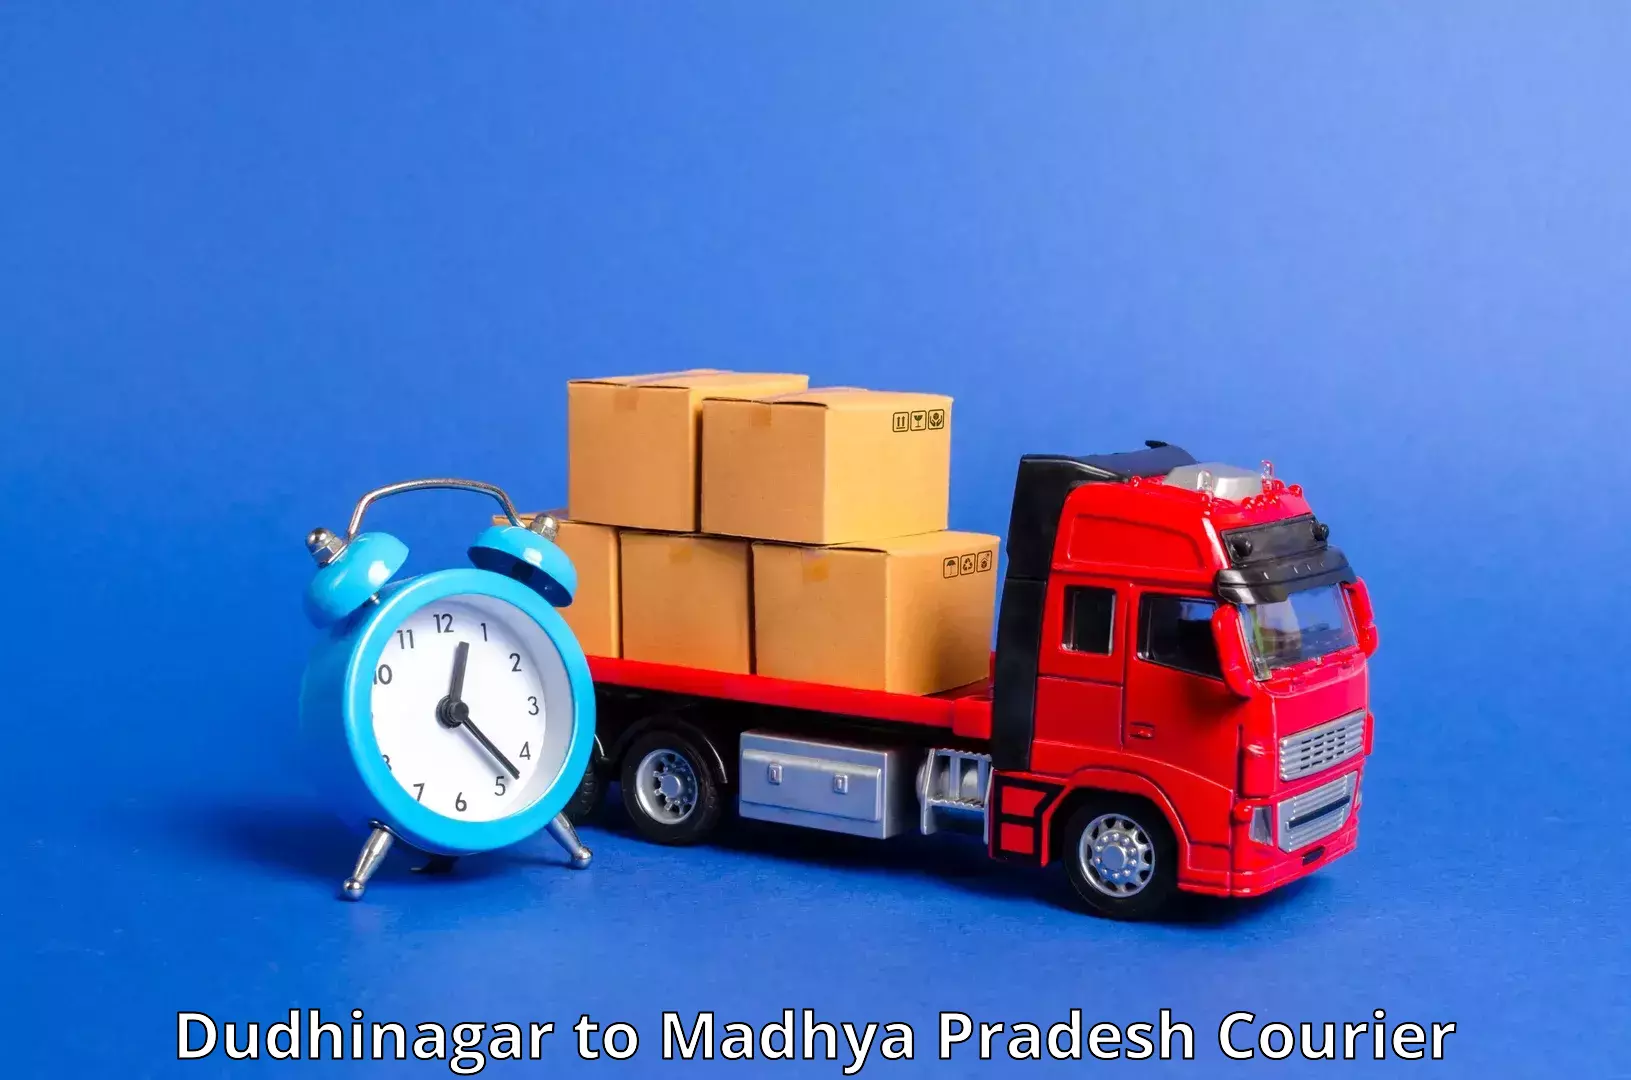 Trackable shipping service Dudhinagar to Chhindwara